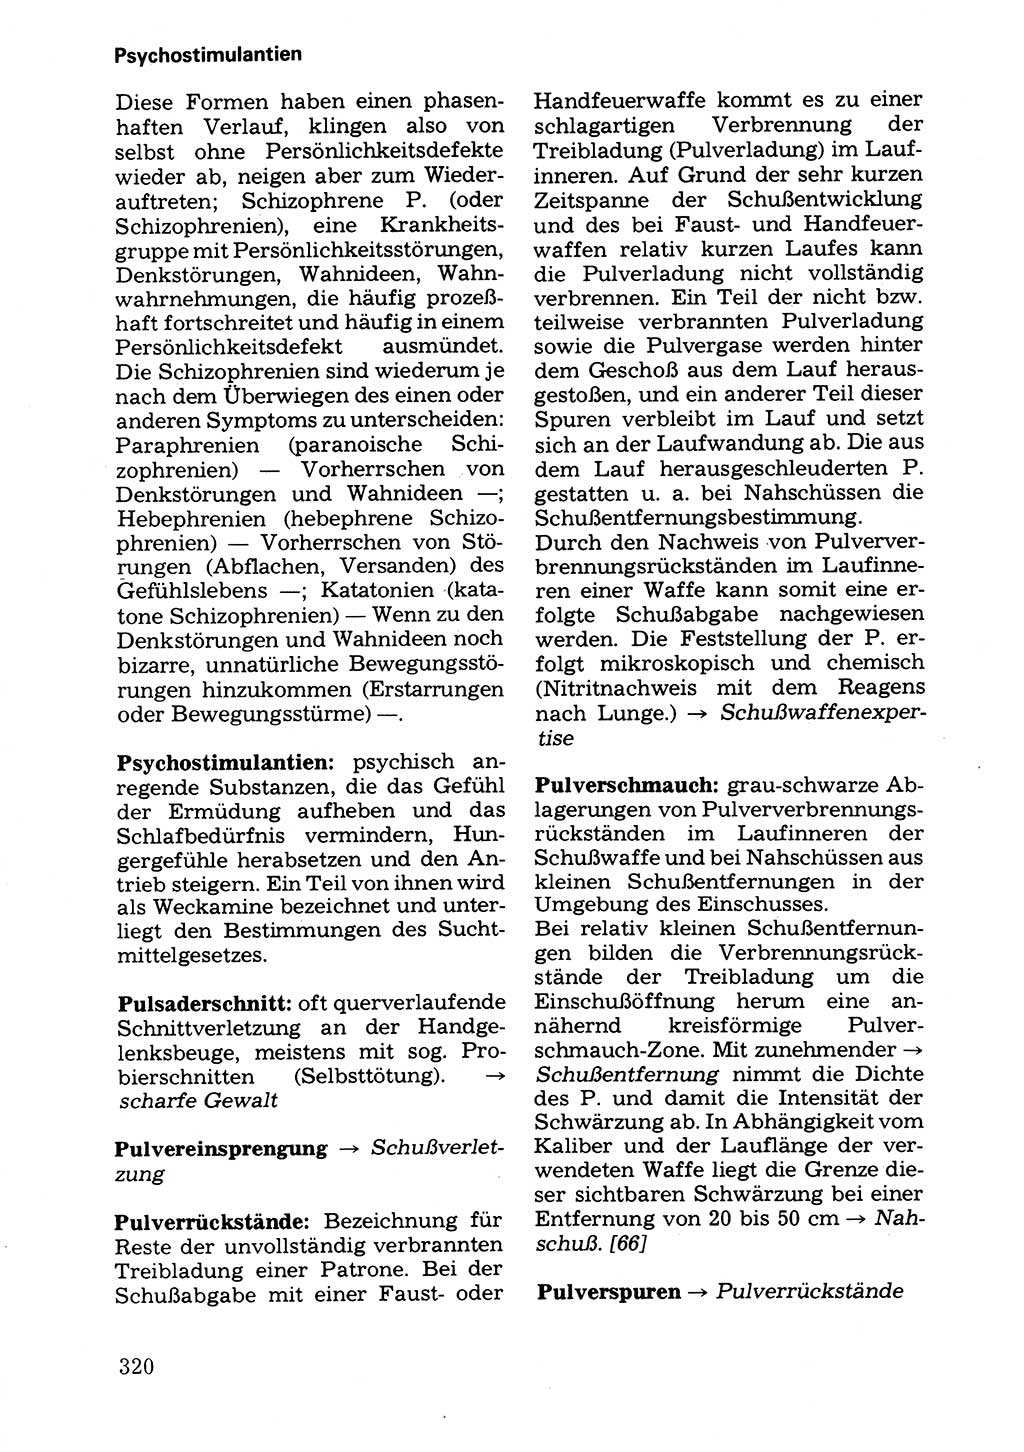 Wörterbuch der sozialistischen Kriminalistik [Deutsche Demokratische Republik (DDR)] 1981, Seite 320 (Wb. soz. Krim. DDR 1981, S. 320)